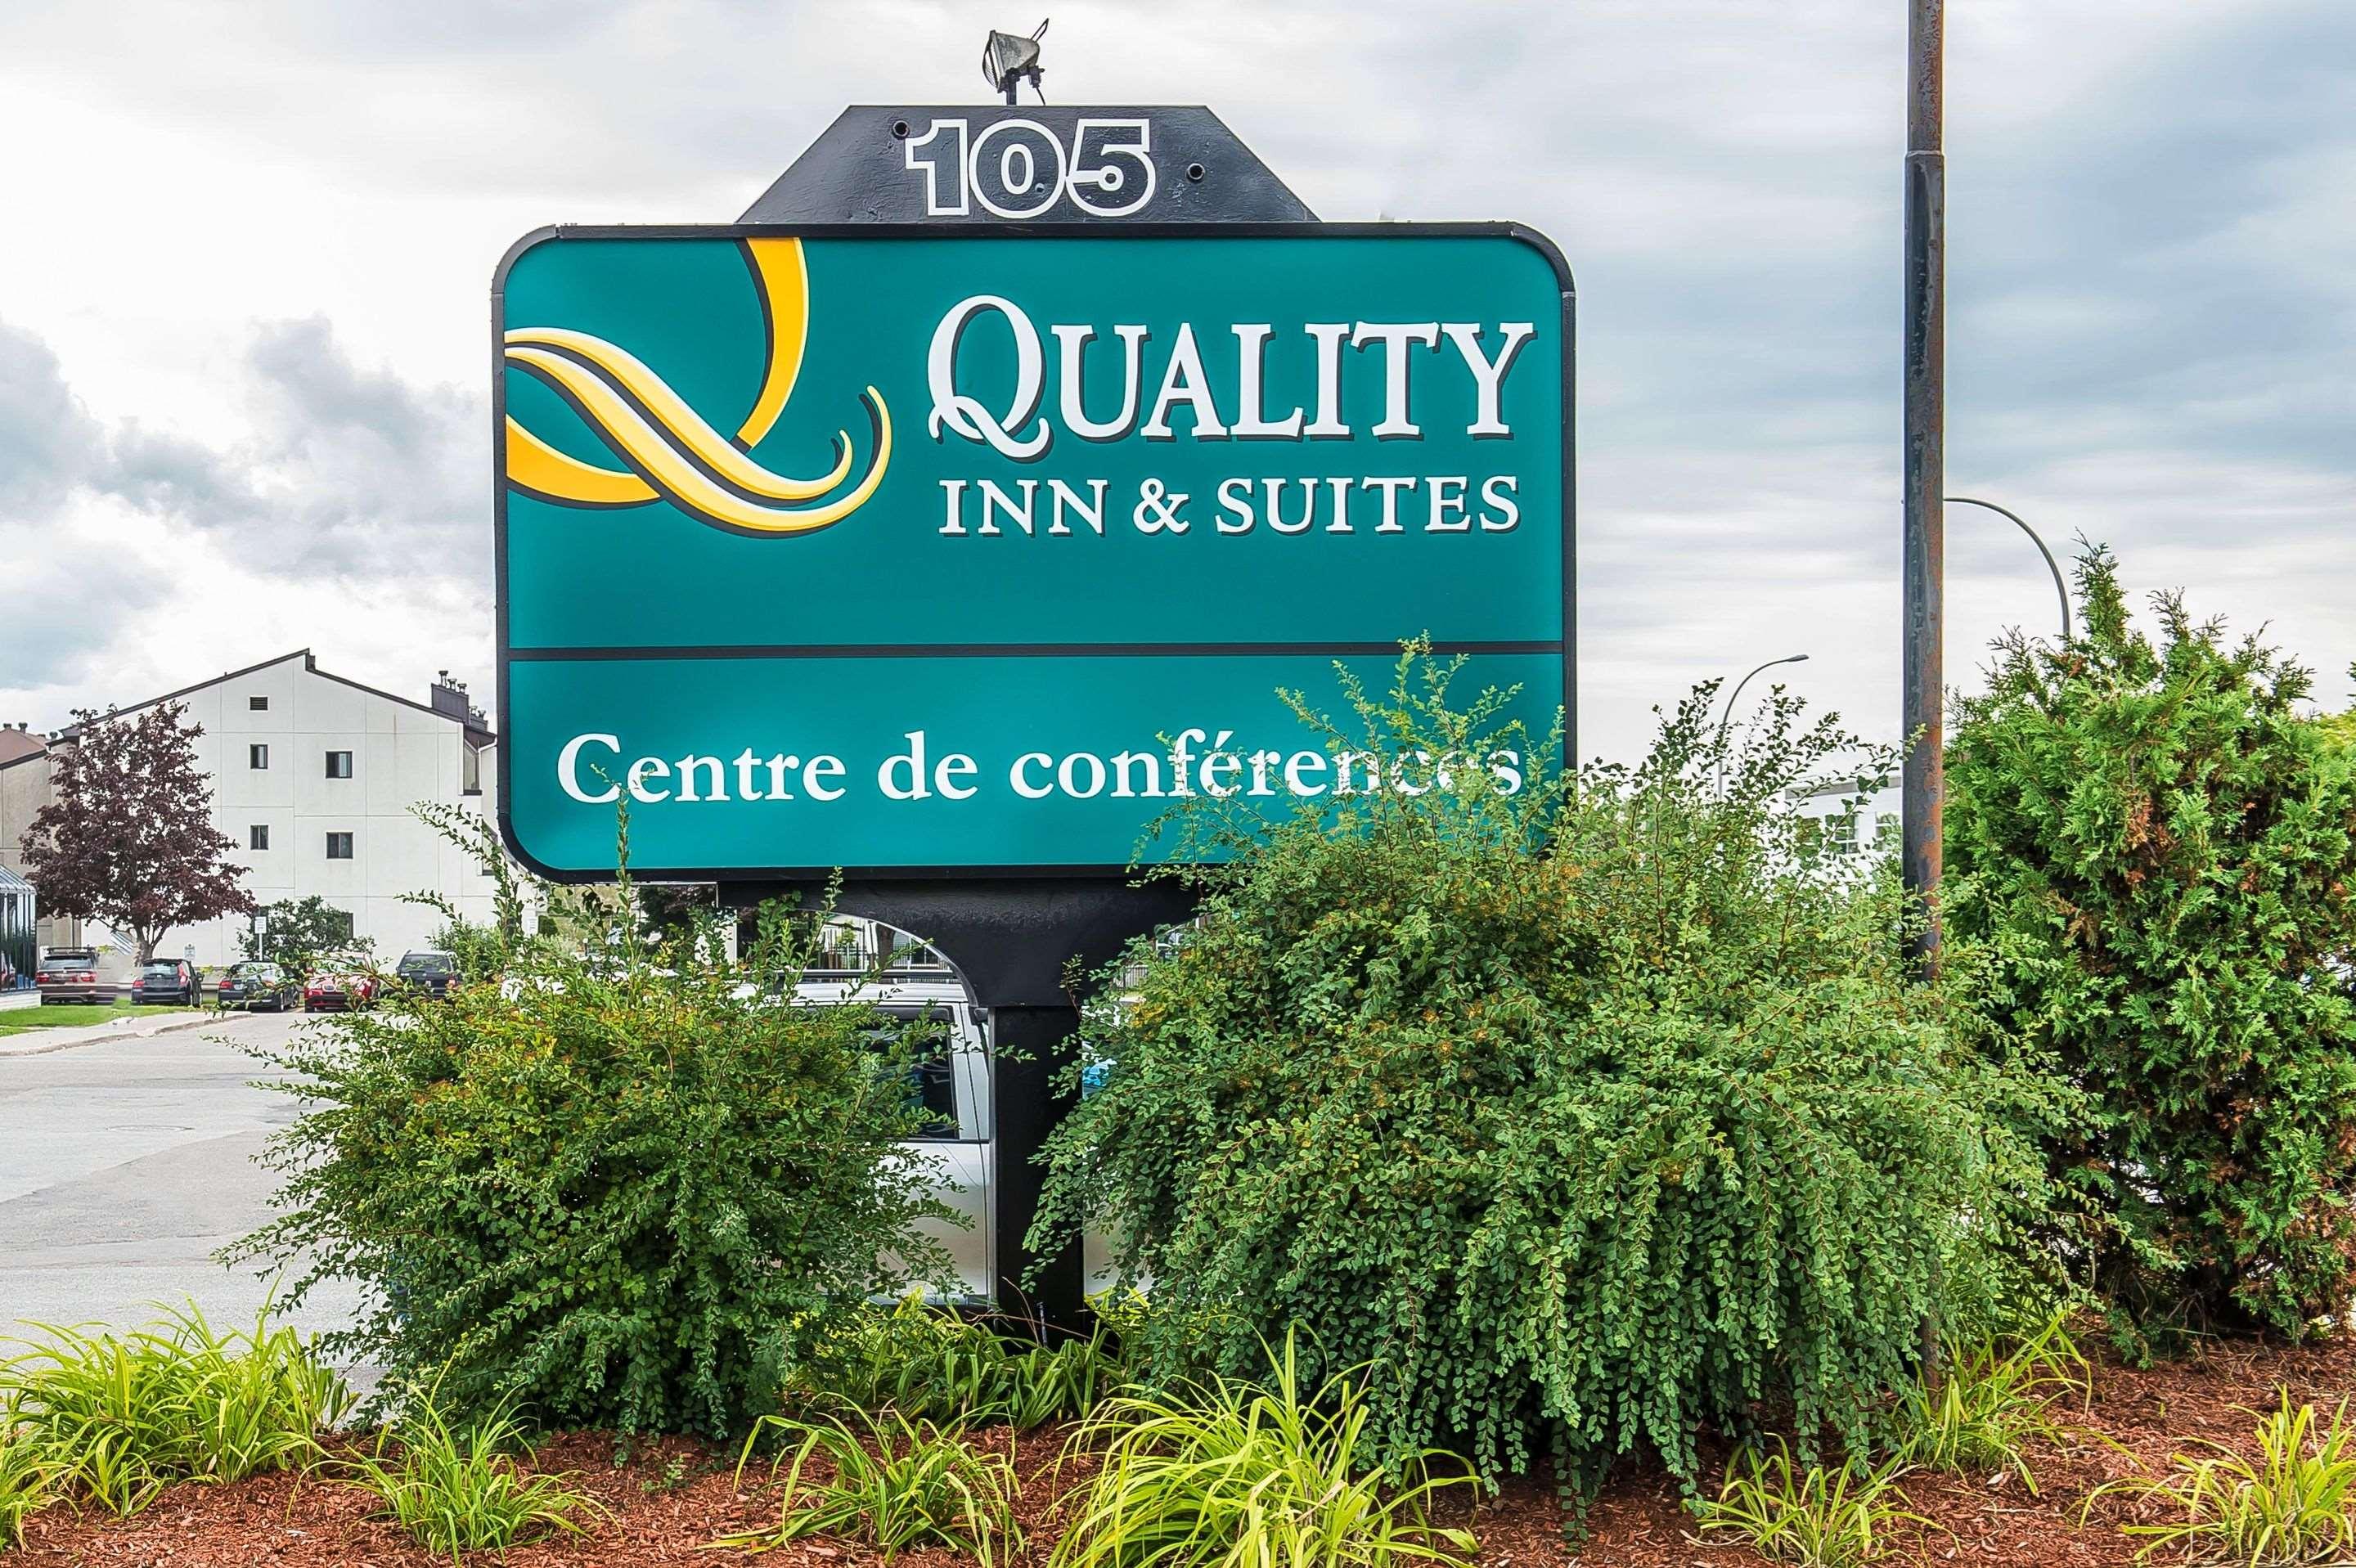 Quality Inn & Suites & Centre de Conférences Gatineau